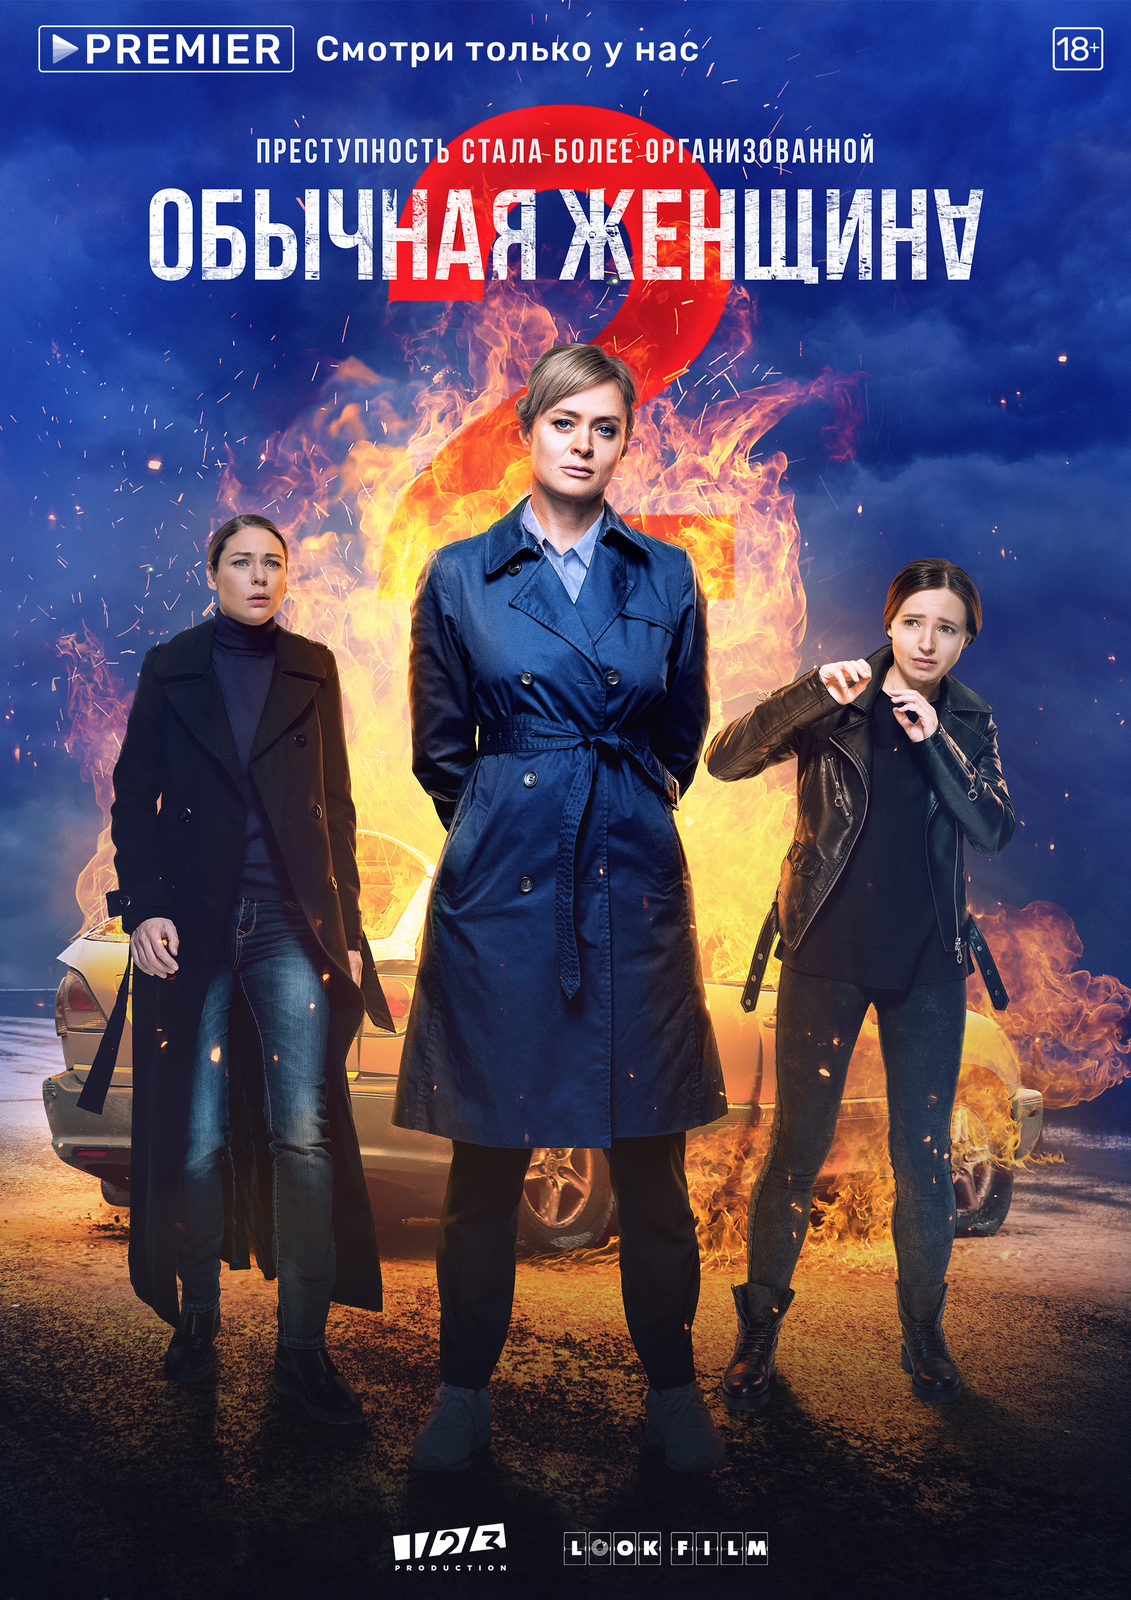 Второй сезон «Обычной женщины» с Анной Михалковой стартует 17 декабря